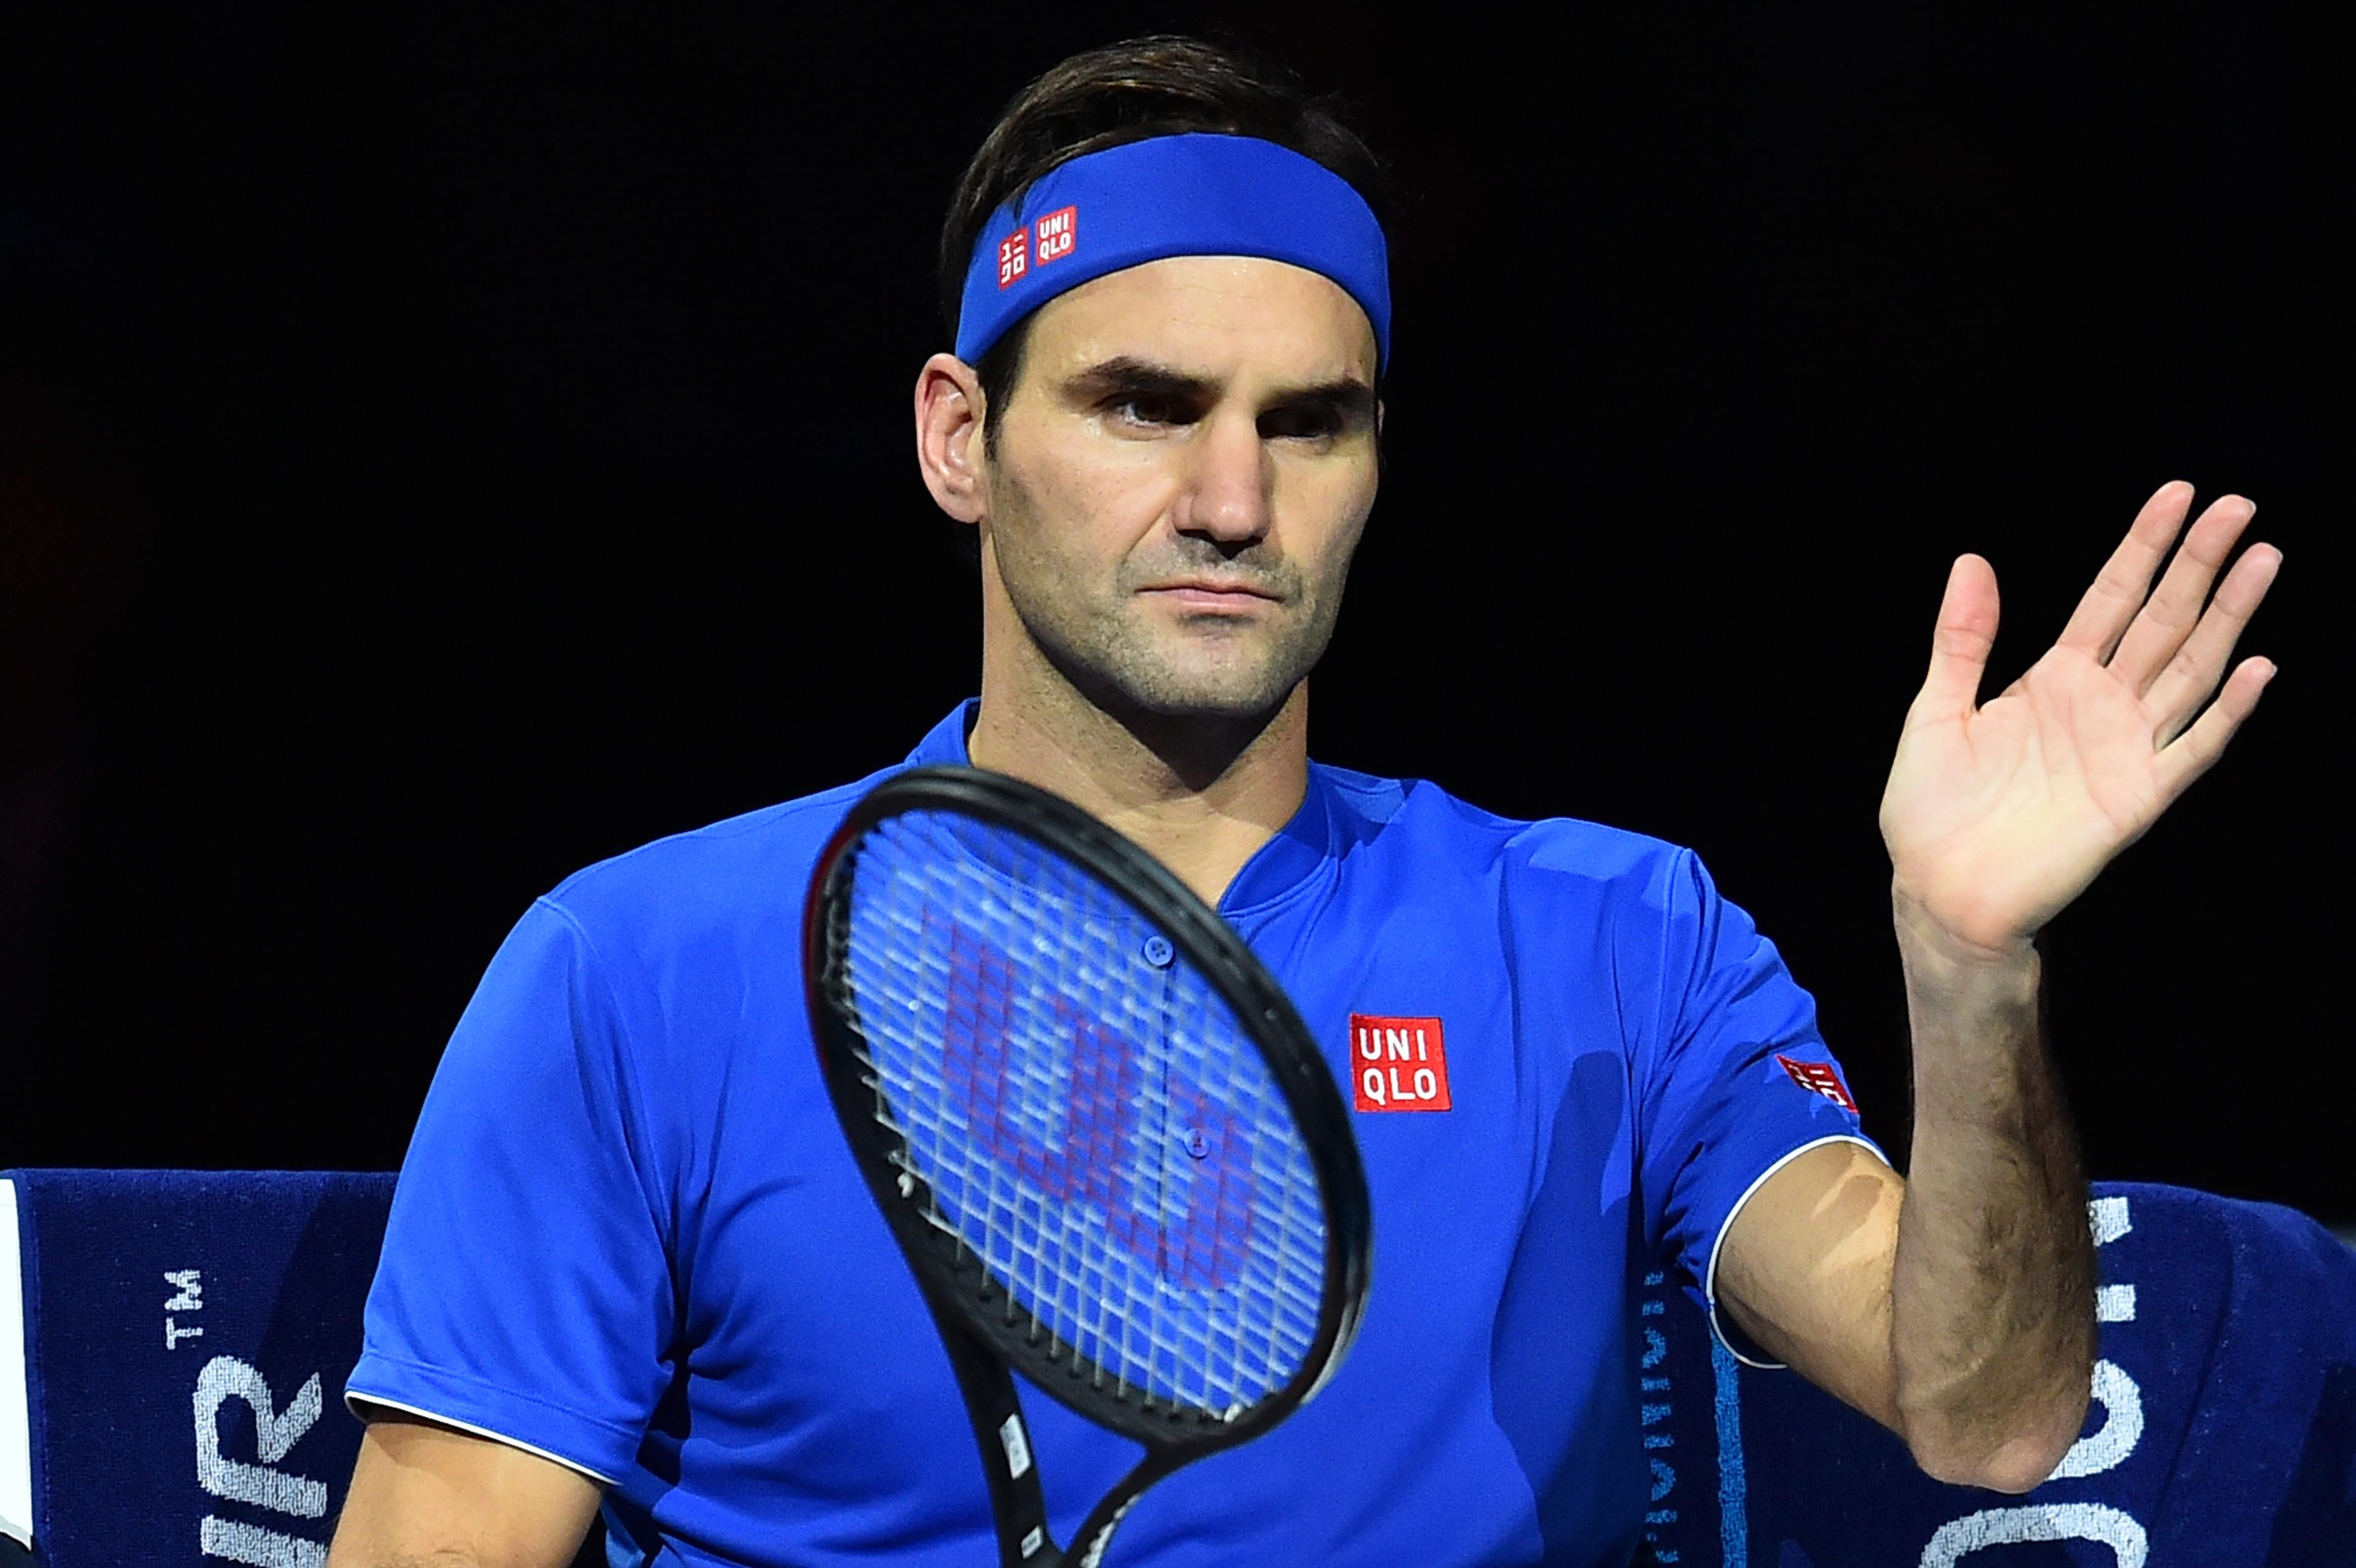 Poslije optužbi koje su ustalasale javnost, Federer progovorio i šokirao teniski svijet